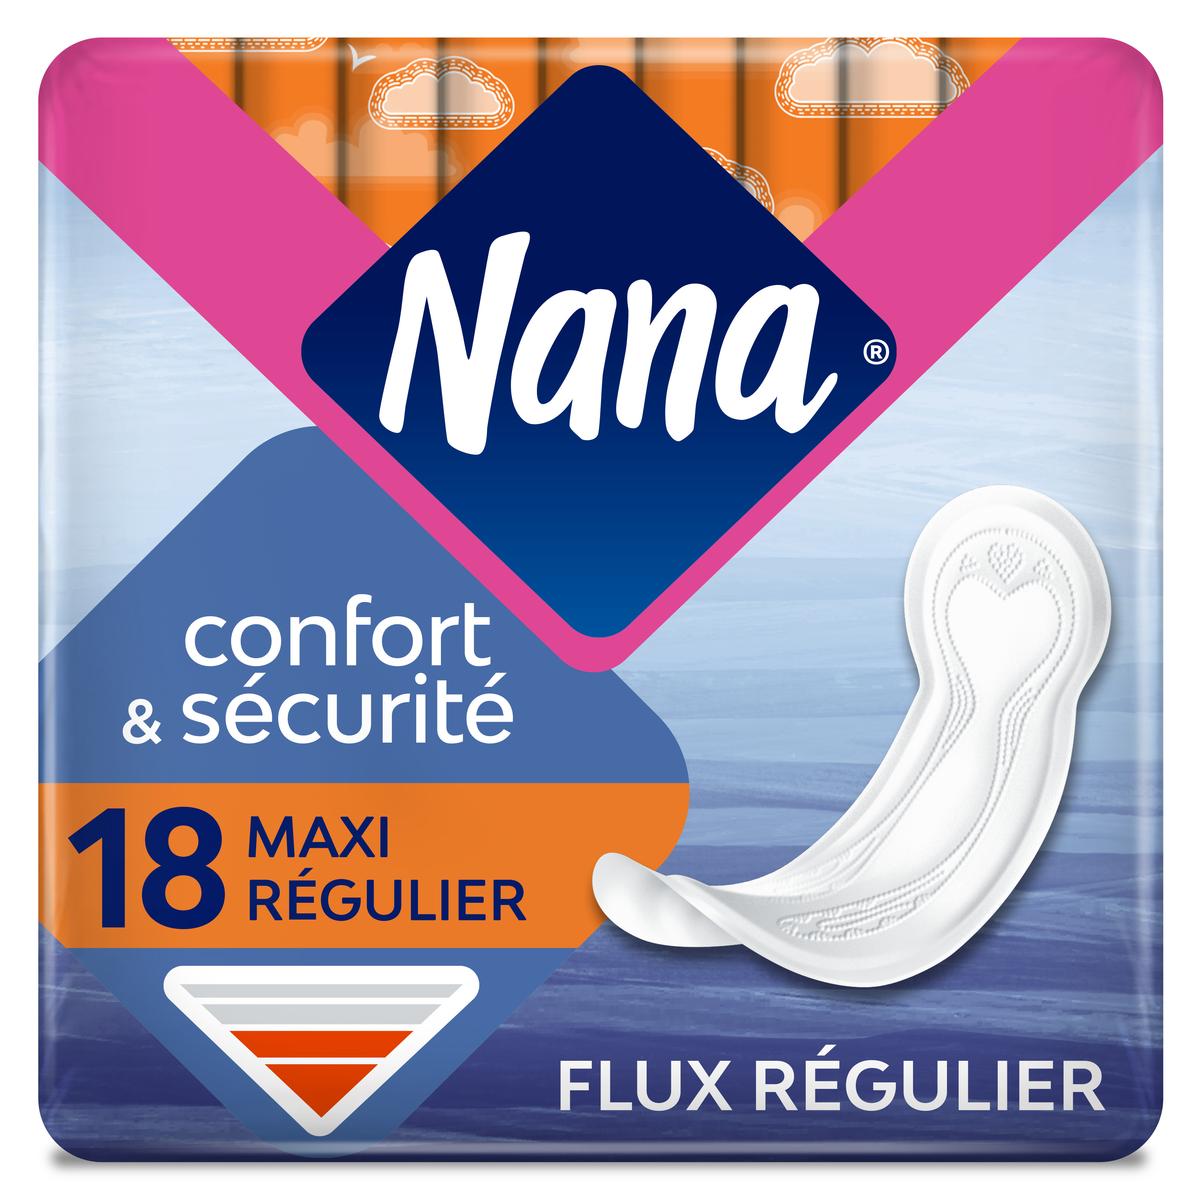 Achat / Vente Nana Serviettes hygiéniques maxi flux normal, 18 pièces